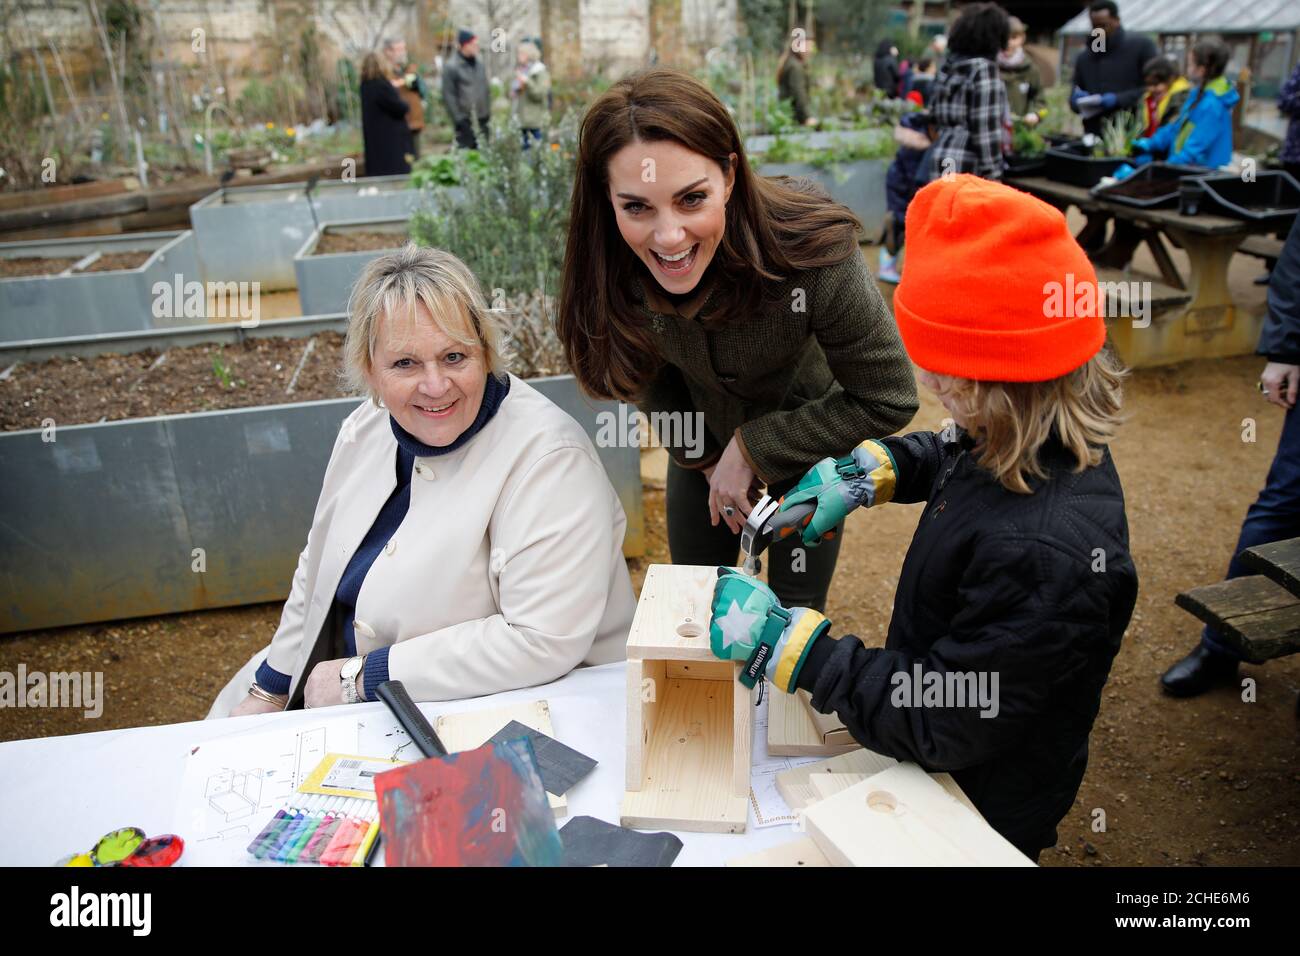 La duchesse de Cambridge aide à fabriquer des bennes d'oiseaux lors d'une visite au King Henry's Walk Garden à Islington, Londres, pour en apprendre davantage sur un projet qui rassemble les gens dans un amour commun de l'horticulture. Banque D'Images